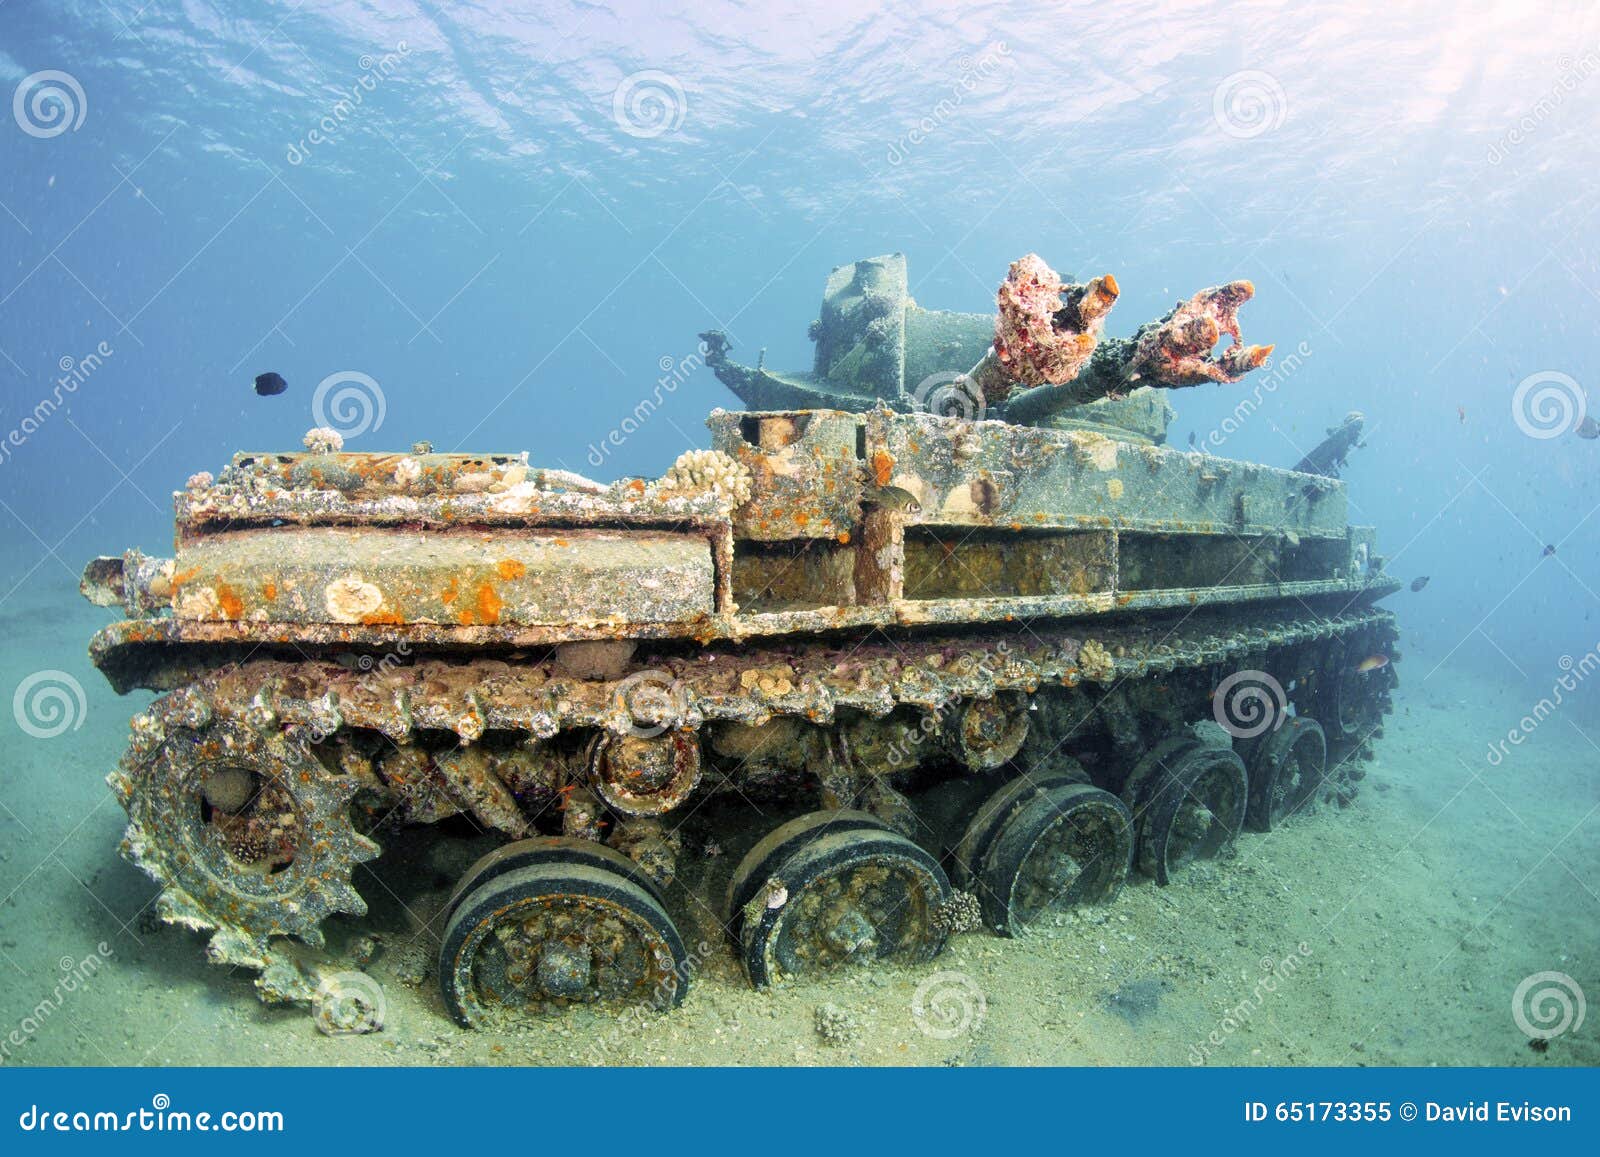 sunken wreck of a tank in aqaba.